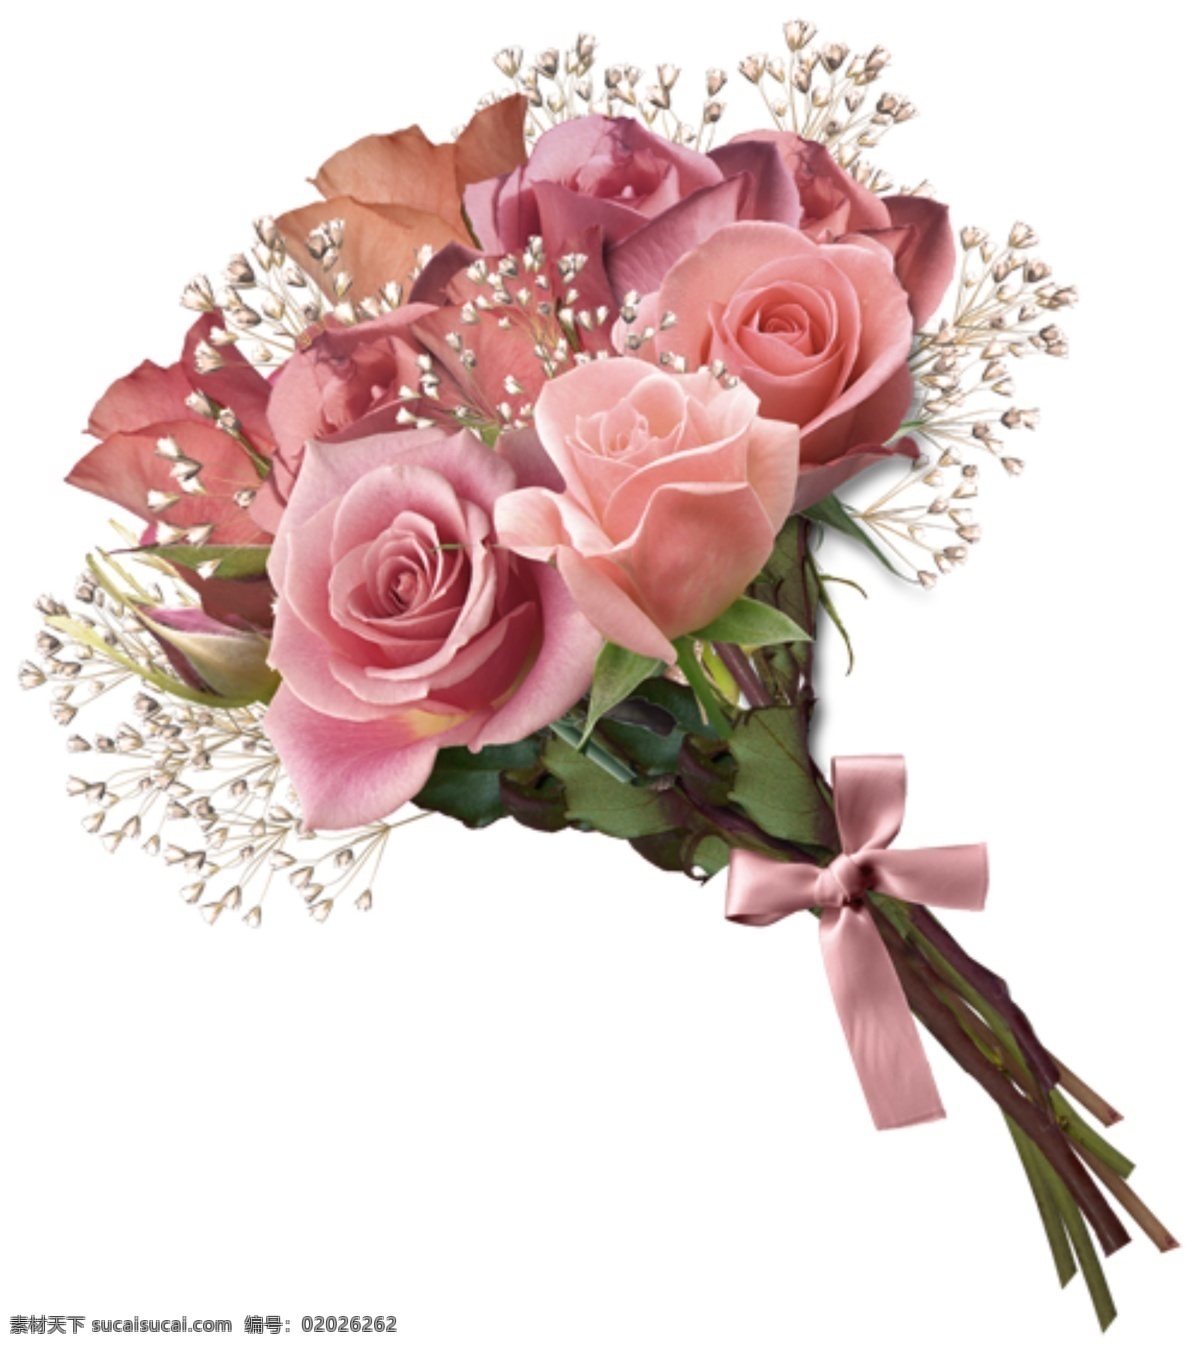 粉玫瑰素材 粉玫瑰 淡粉 满天星 广告素材 花店 花素材